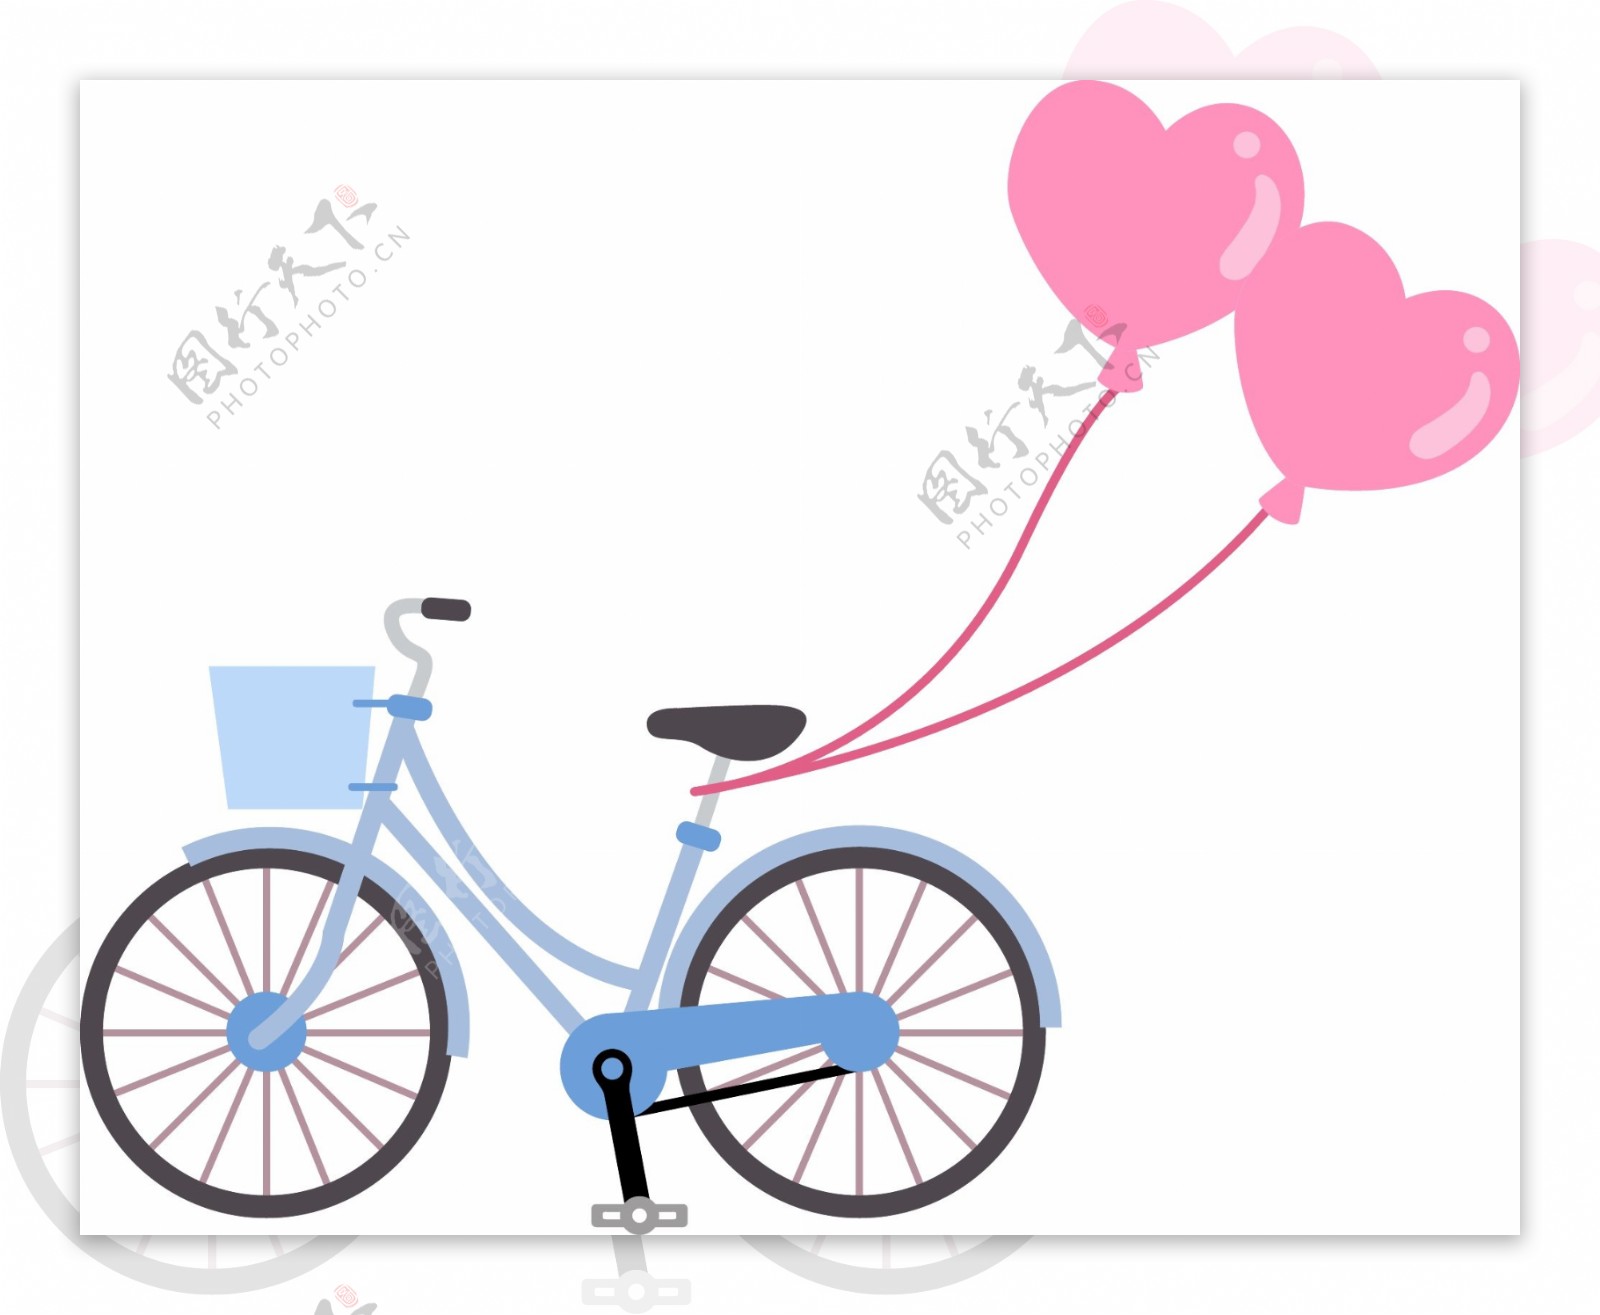 挂着爱心气球的蓝色自行车